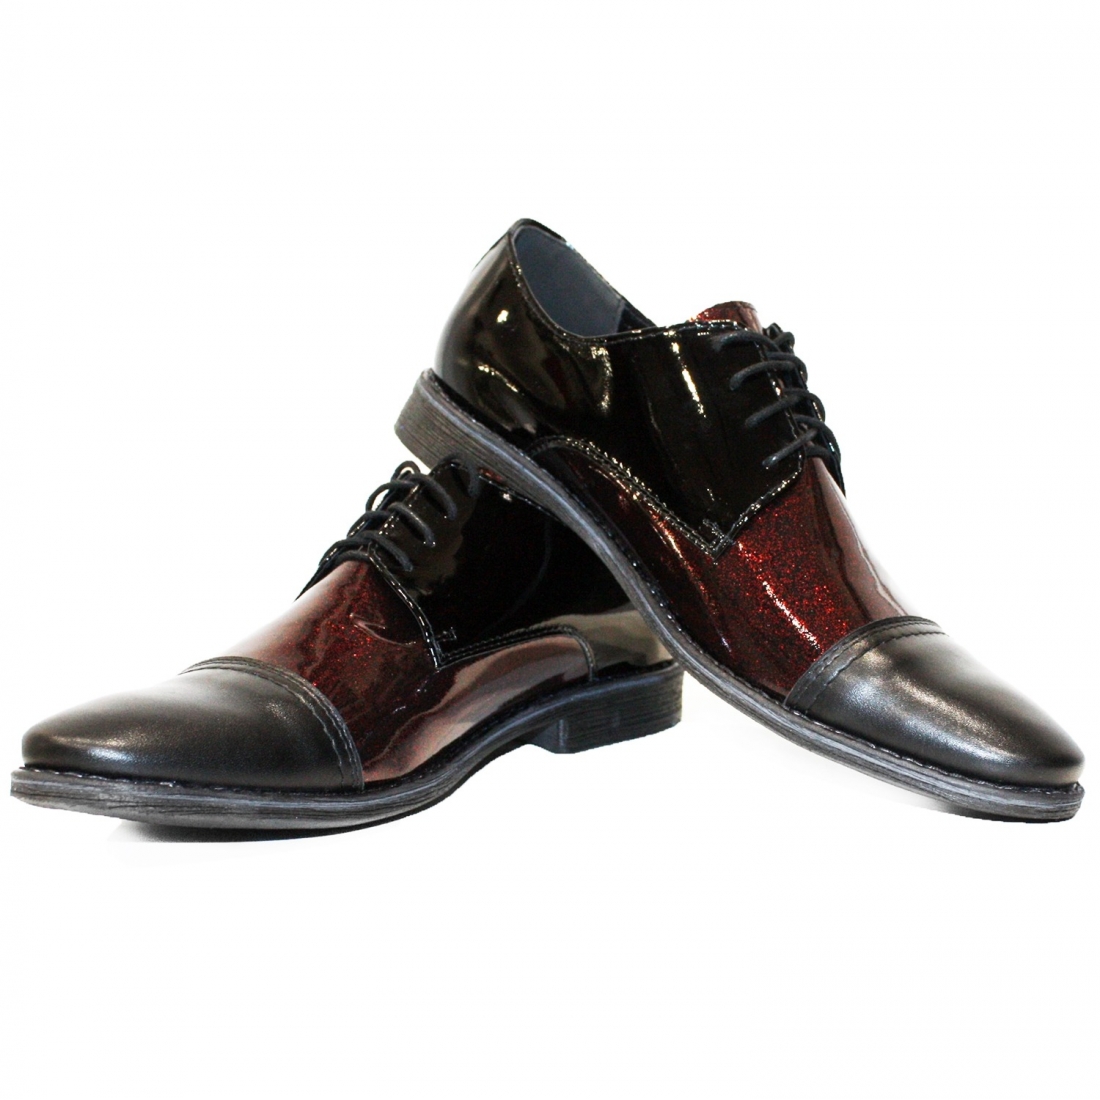 Modello Rollero - Scarpe Classiche - Handmade Colorful Italian Leather Shoes